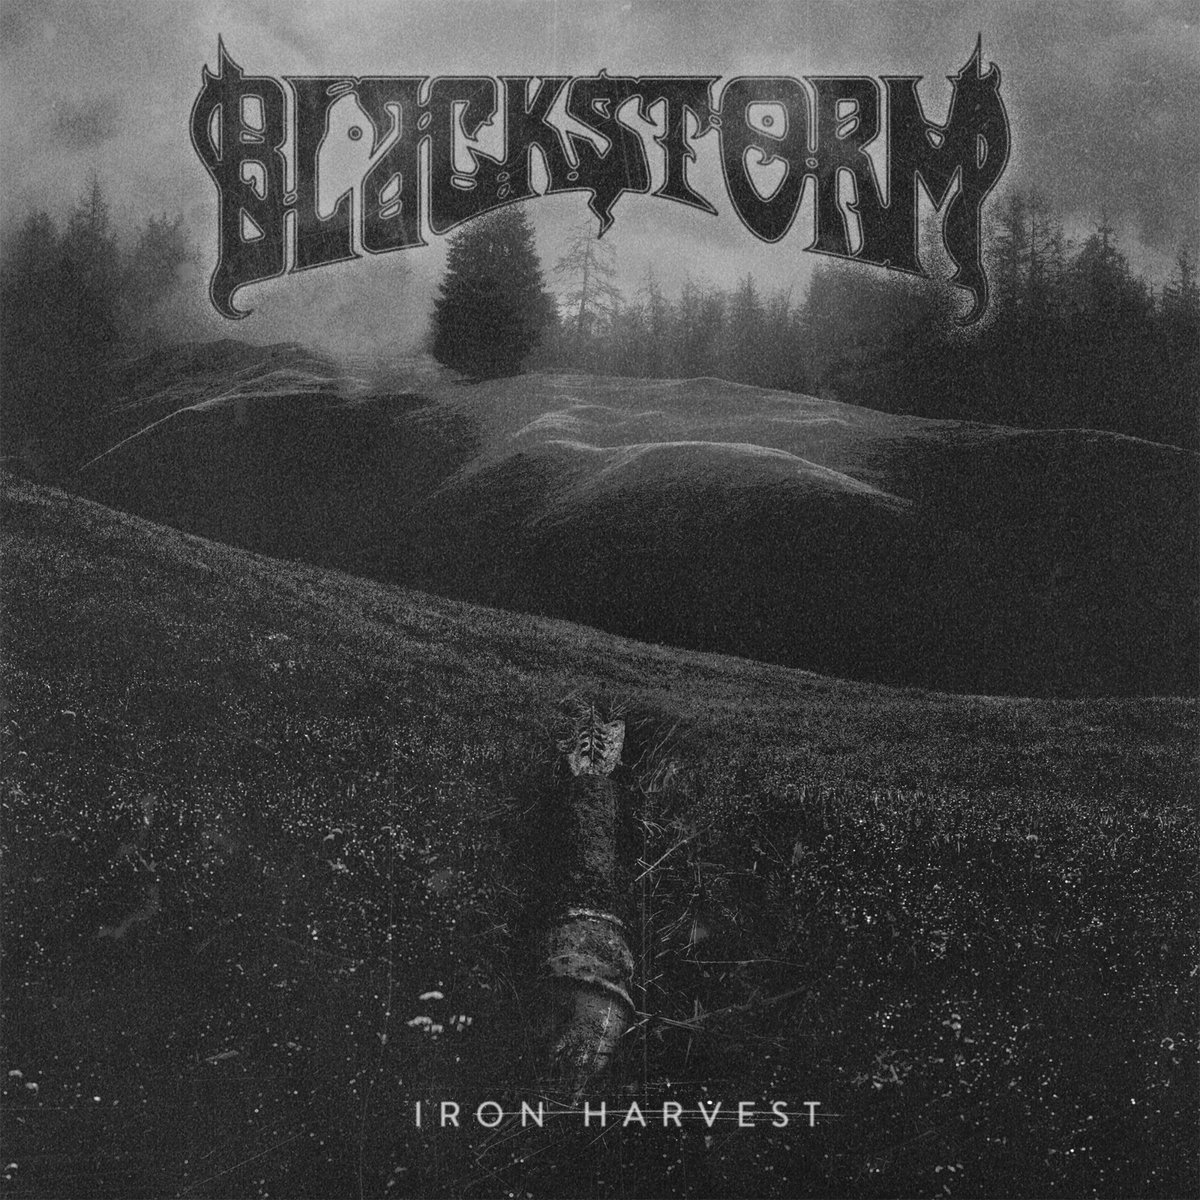 Wet en regelgeving Bouwen op boerderij Iron Harvest | Blackstorm